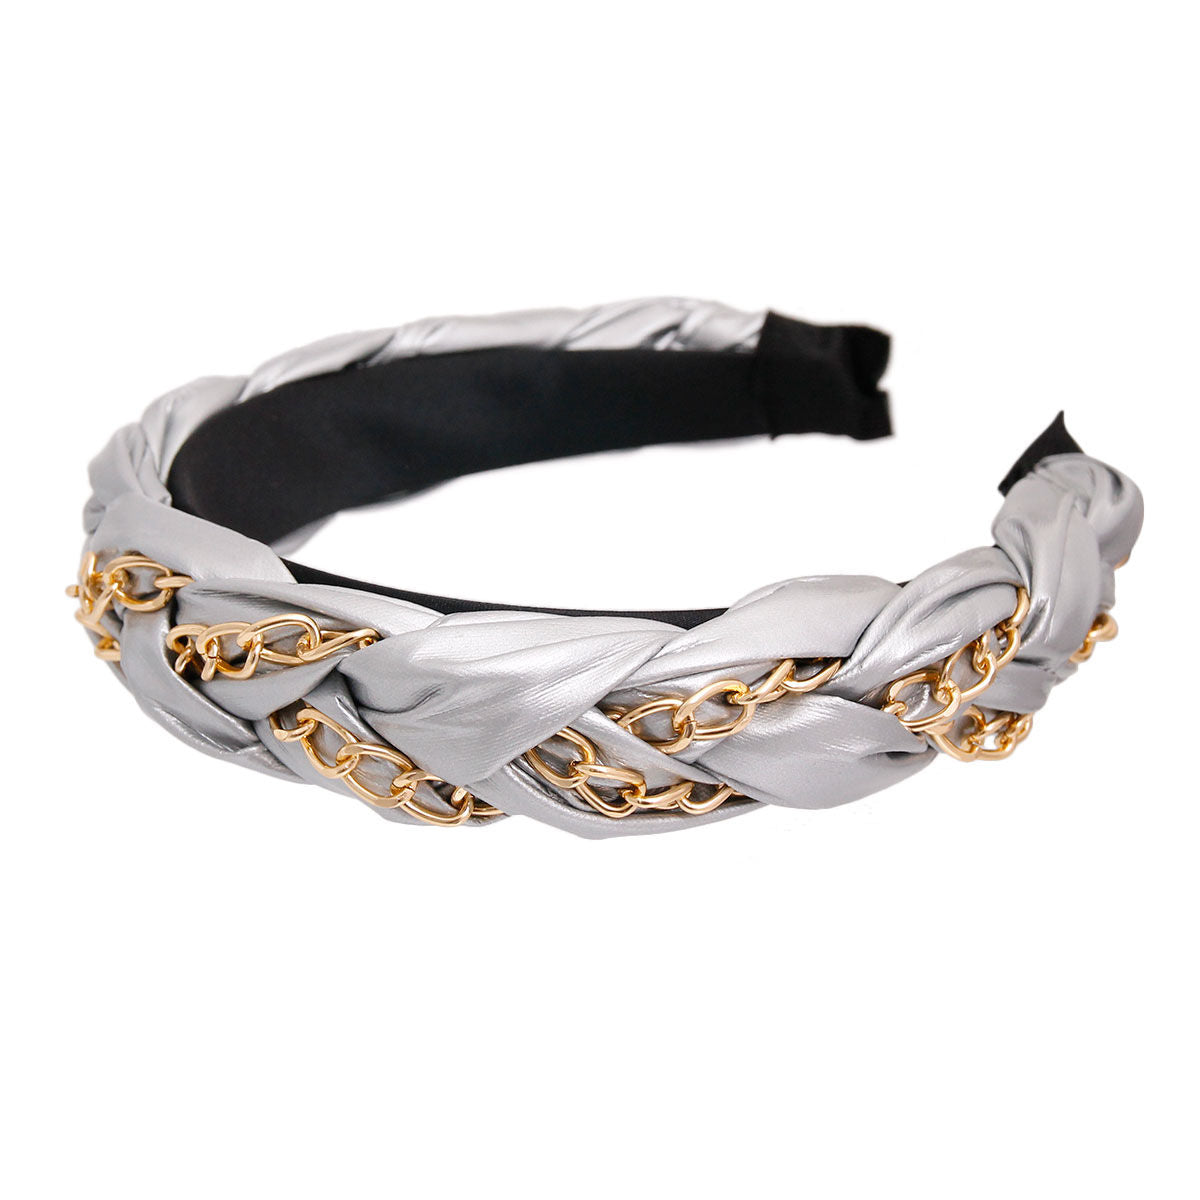 Silver Braided Chain Headband